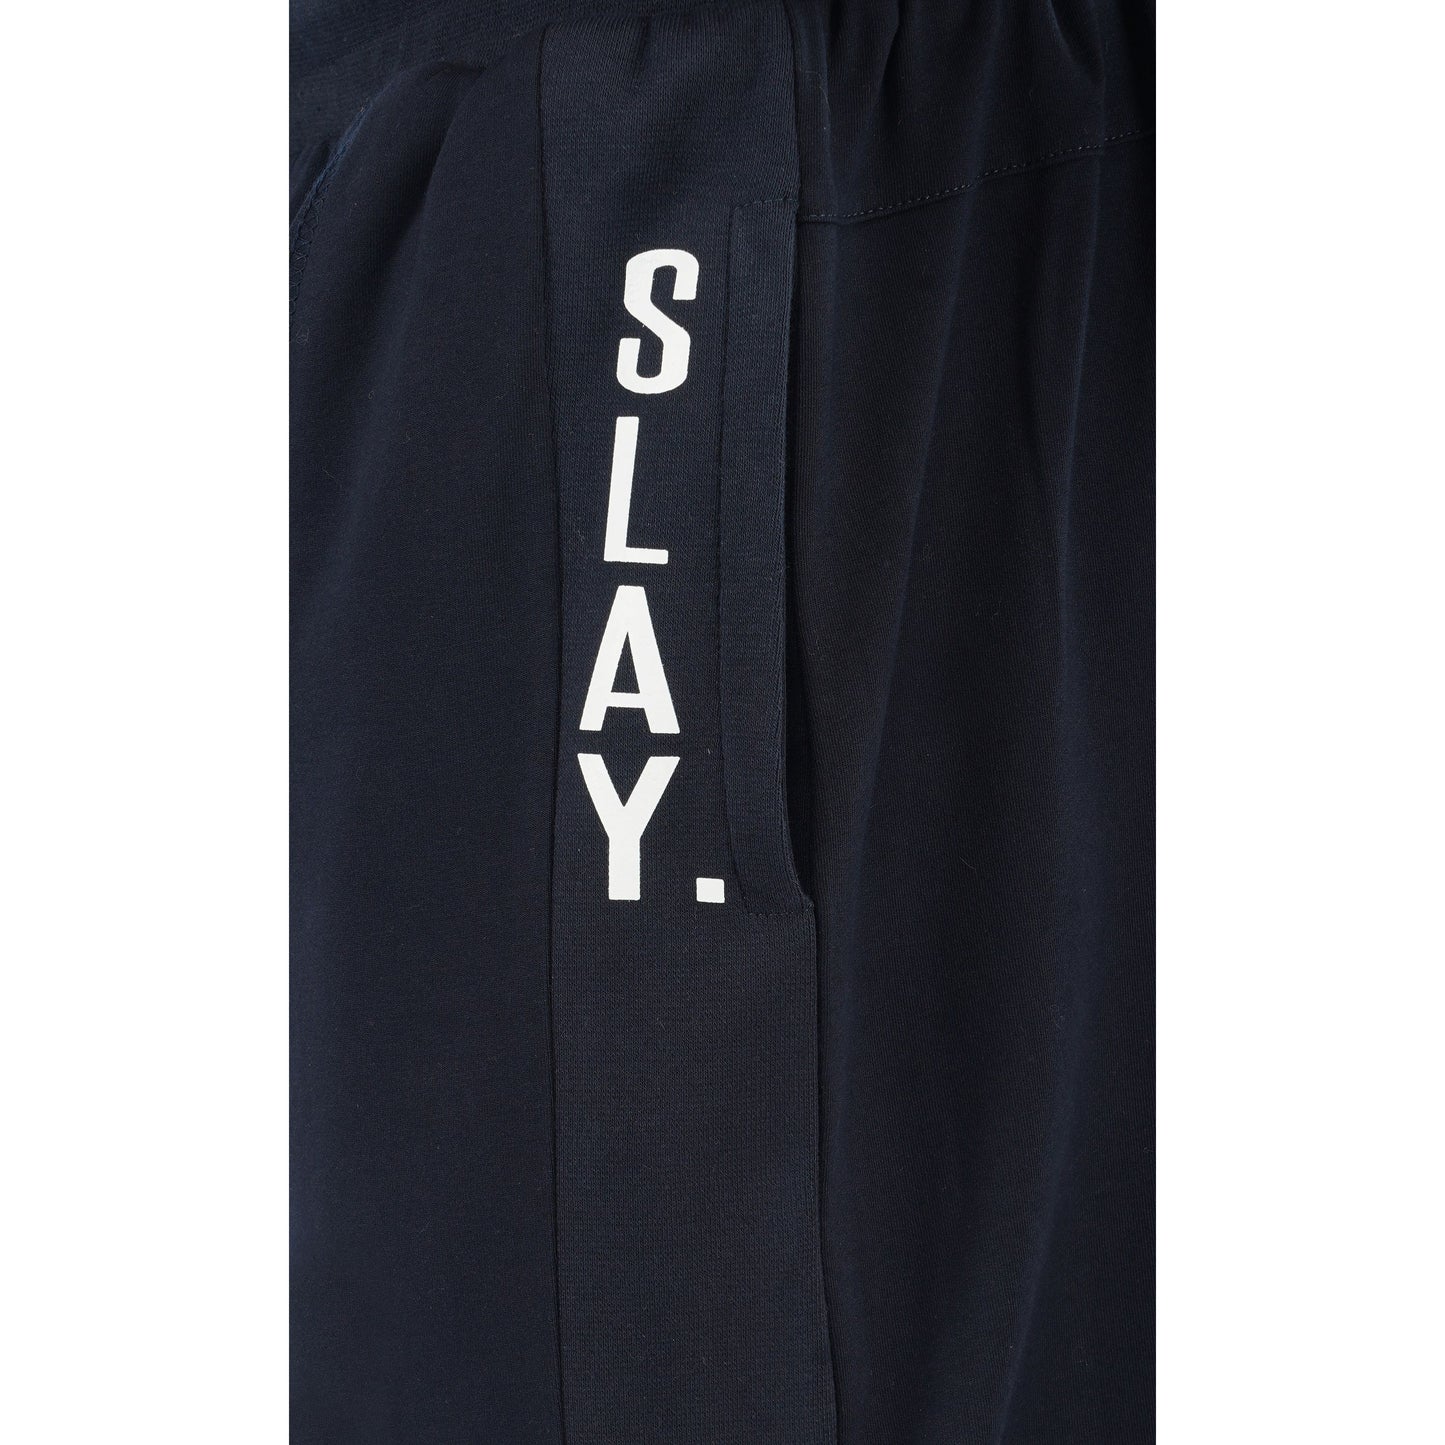 SLAY. Men's Navy Blue Joggers-clothing-to-slay.myshopify.com-Joggers